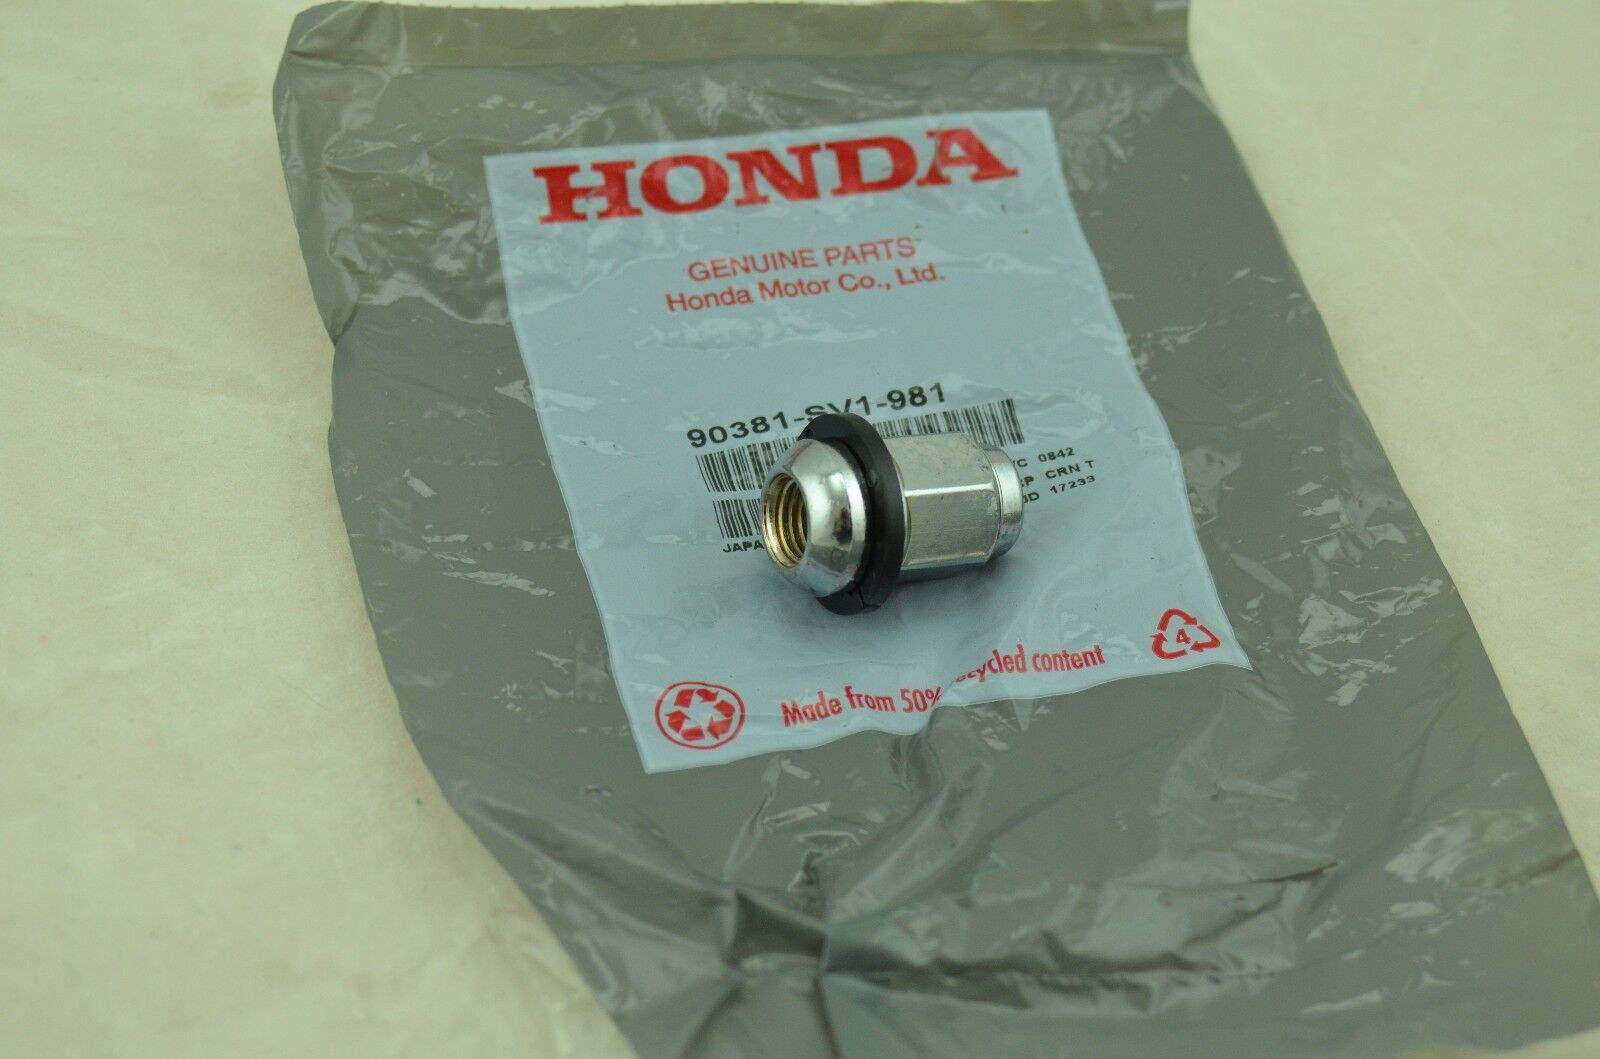 NEW Genuine Honda OEM - Single Wheel Lug Nut with Retainer - 90381-SV1-981